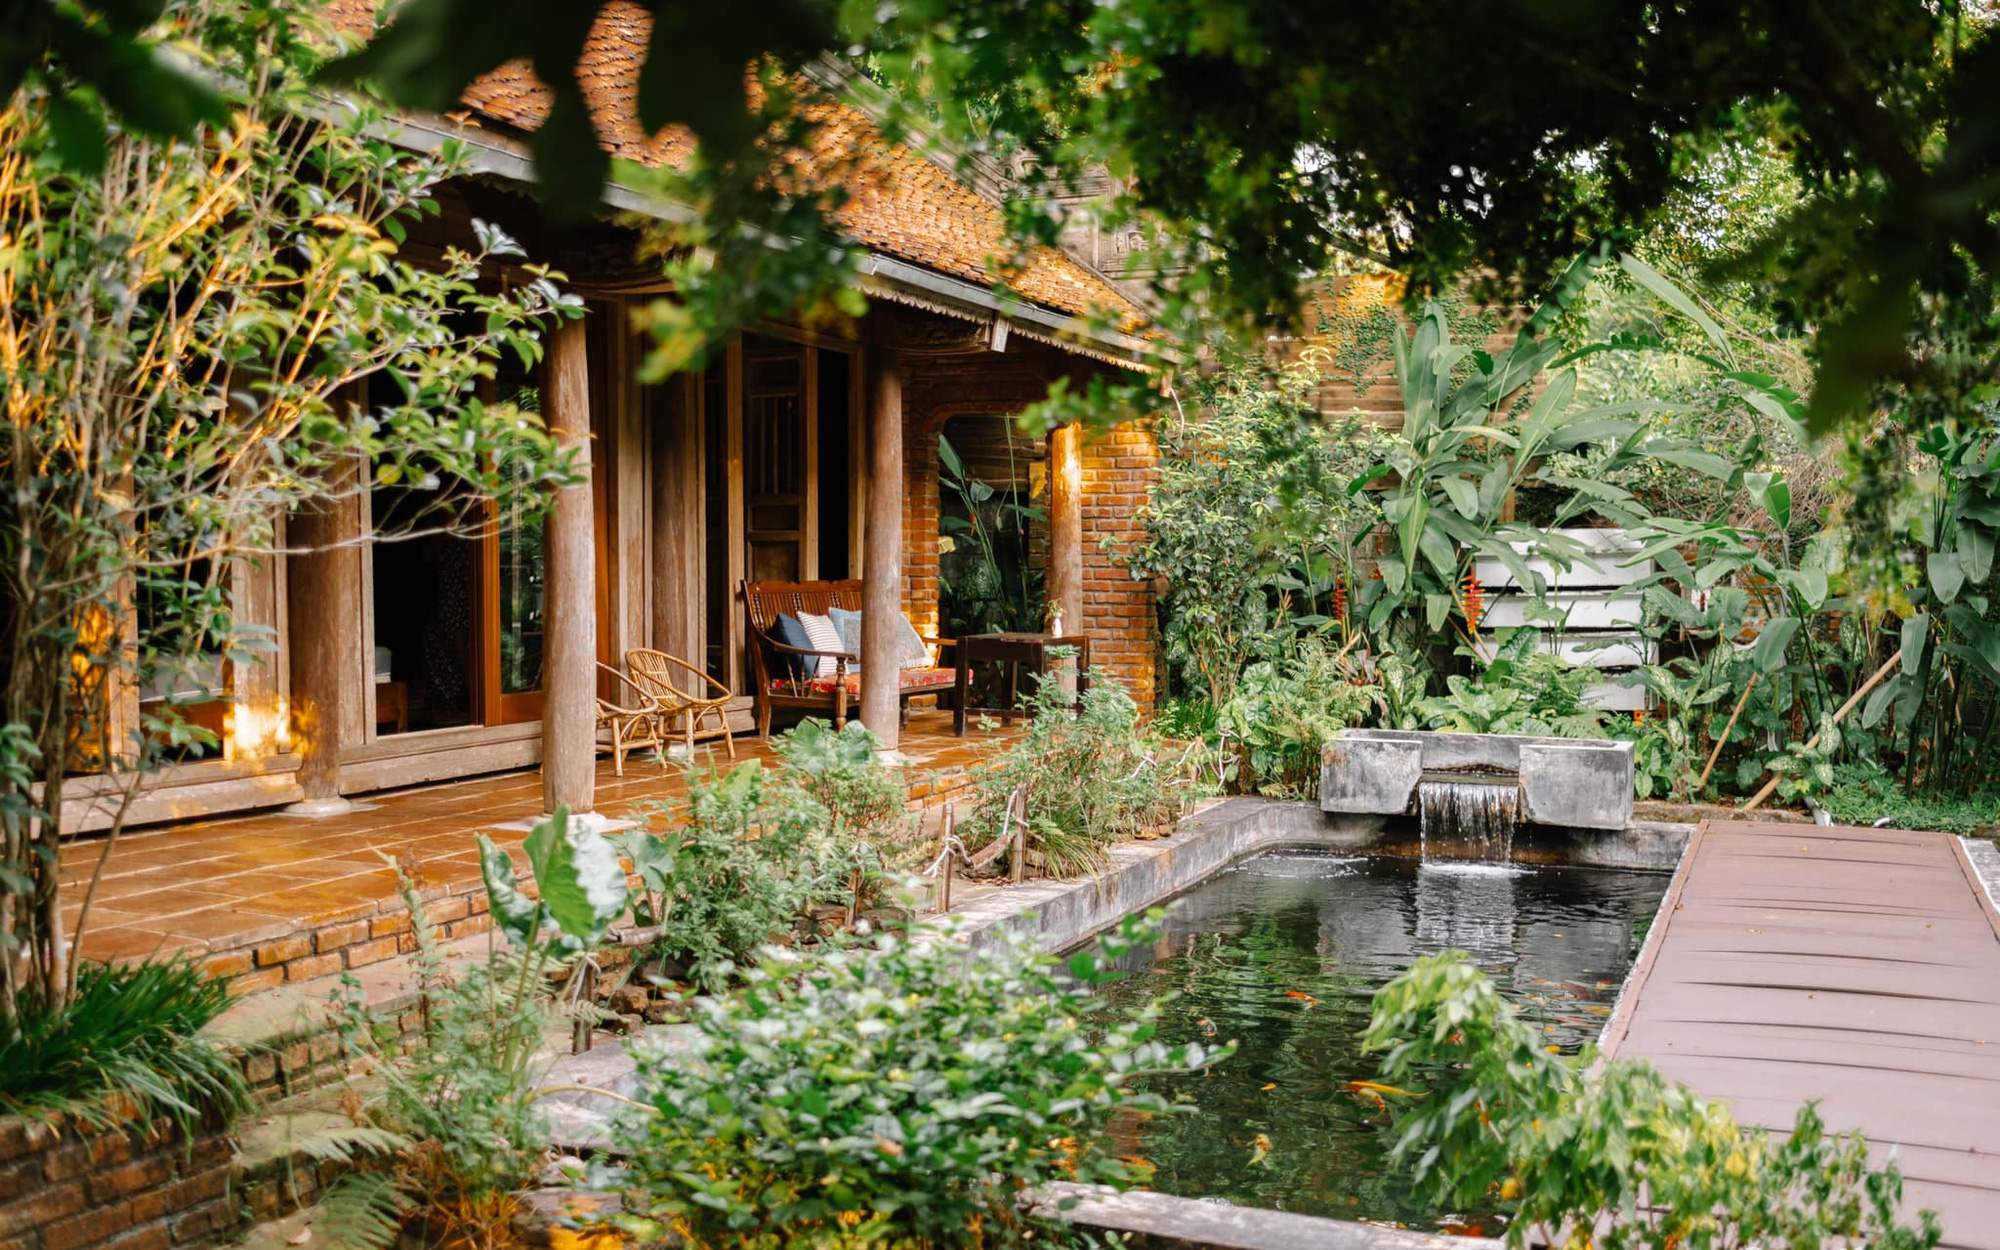 Cuộc sống yên bình trong ngôi nhà nhỏ và khu vườn xanh mát bóng cây ở ngoại thành Hà Nội